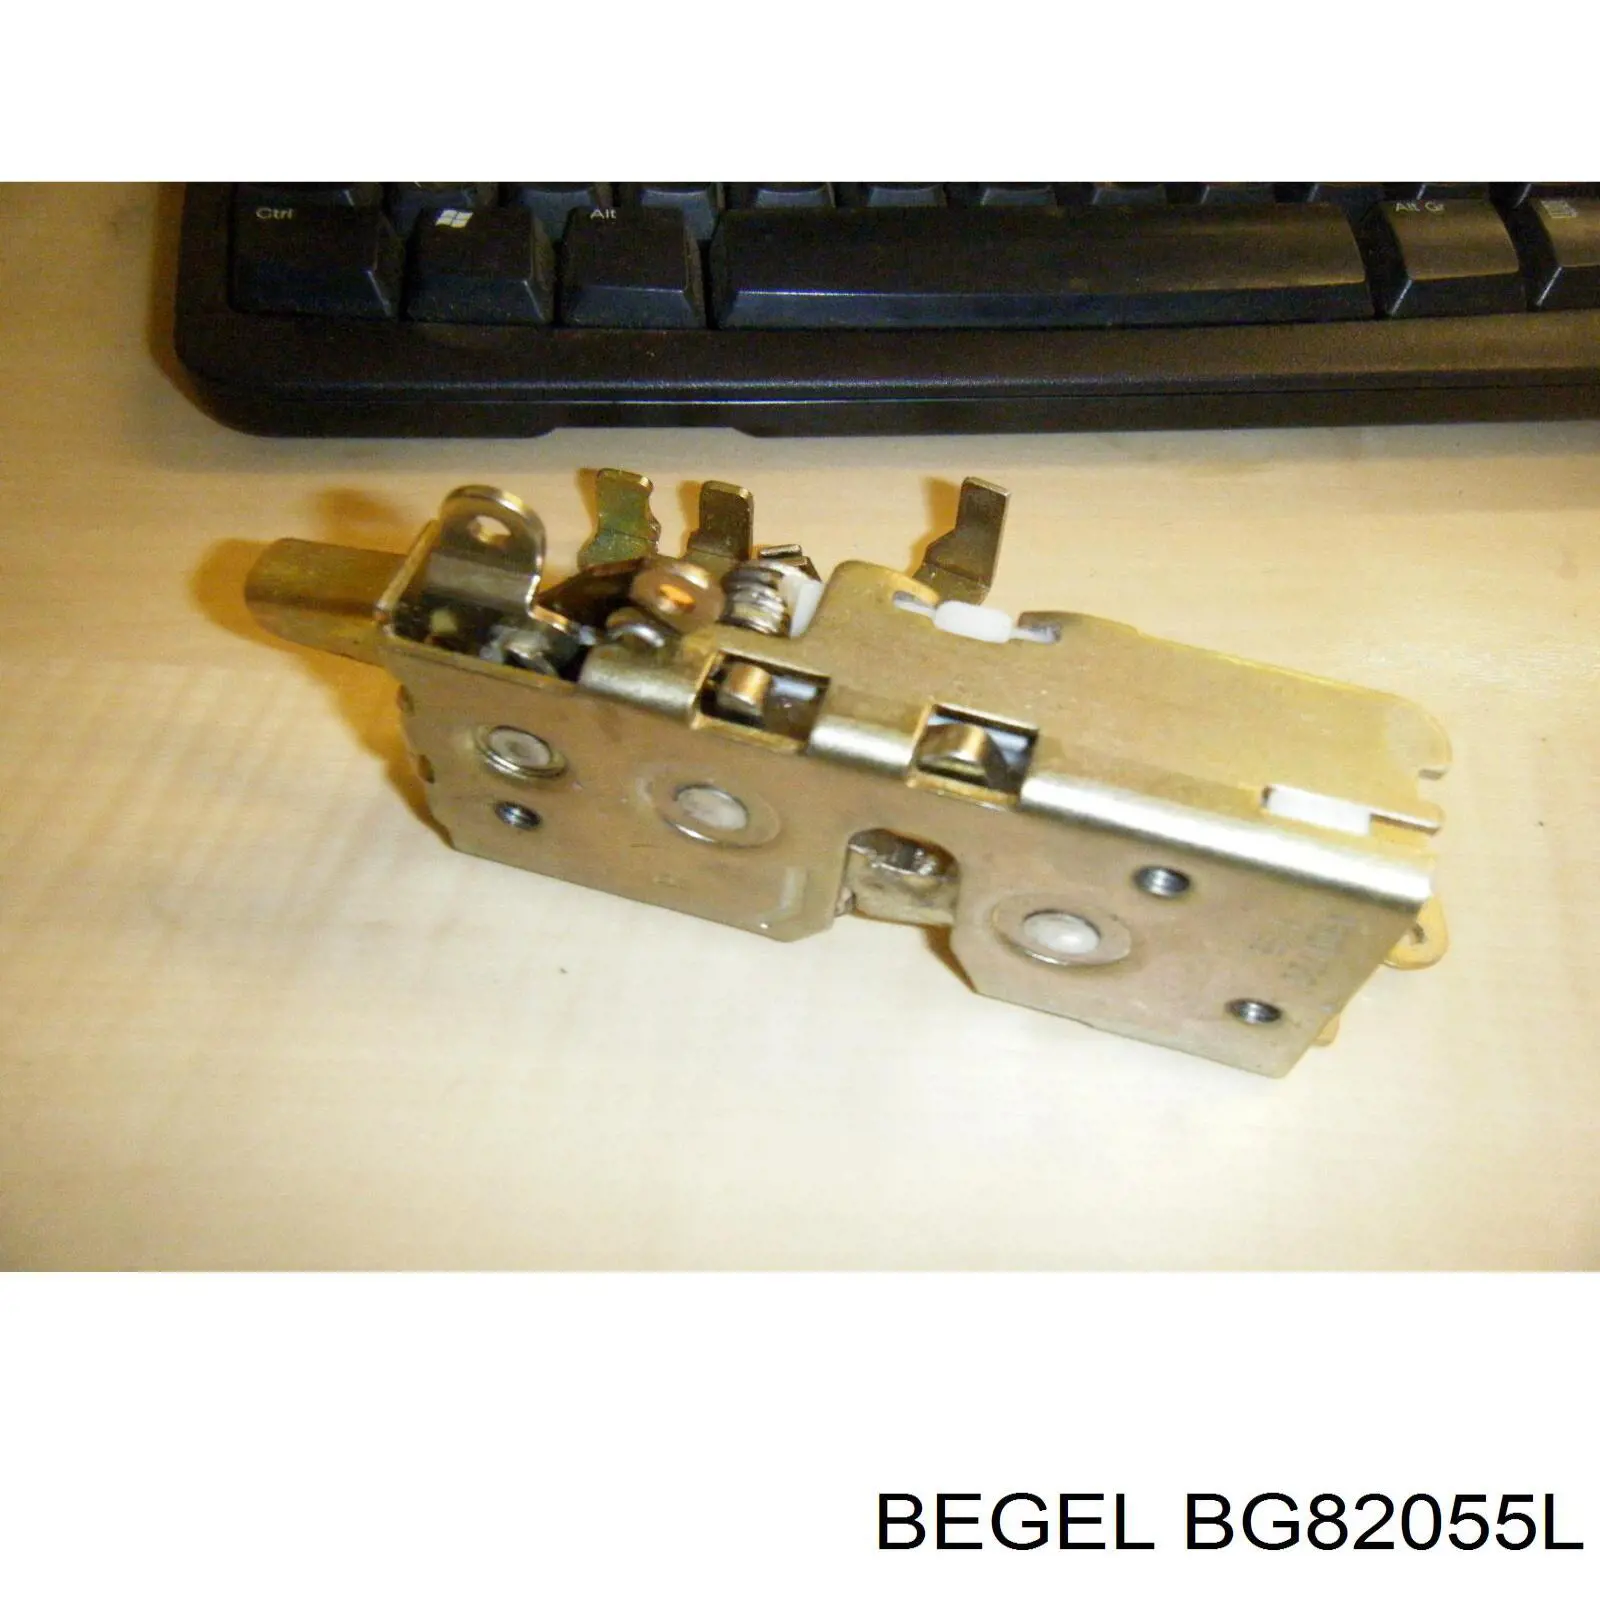 BG82055L Begel указатель поворота левый